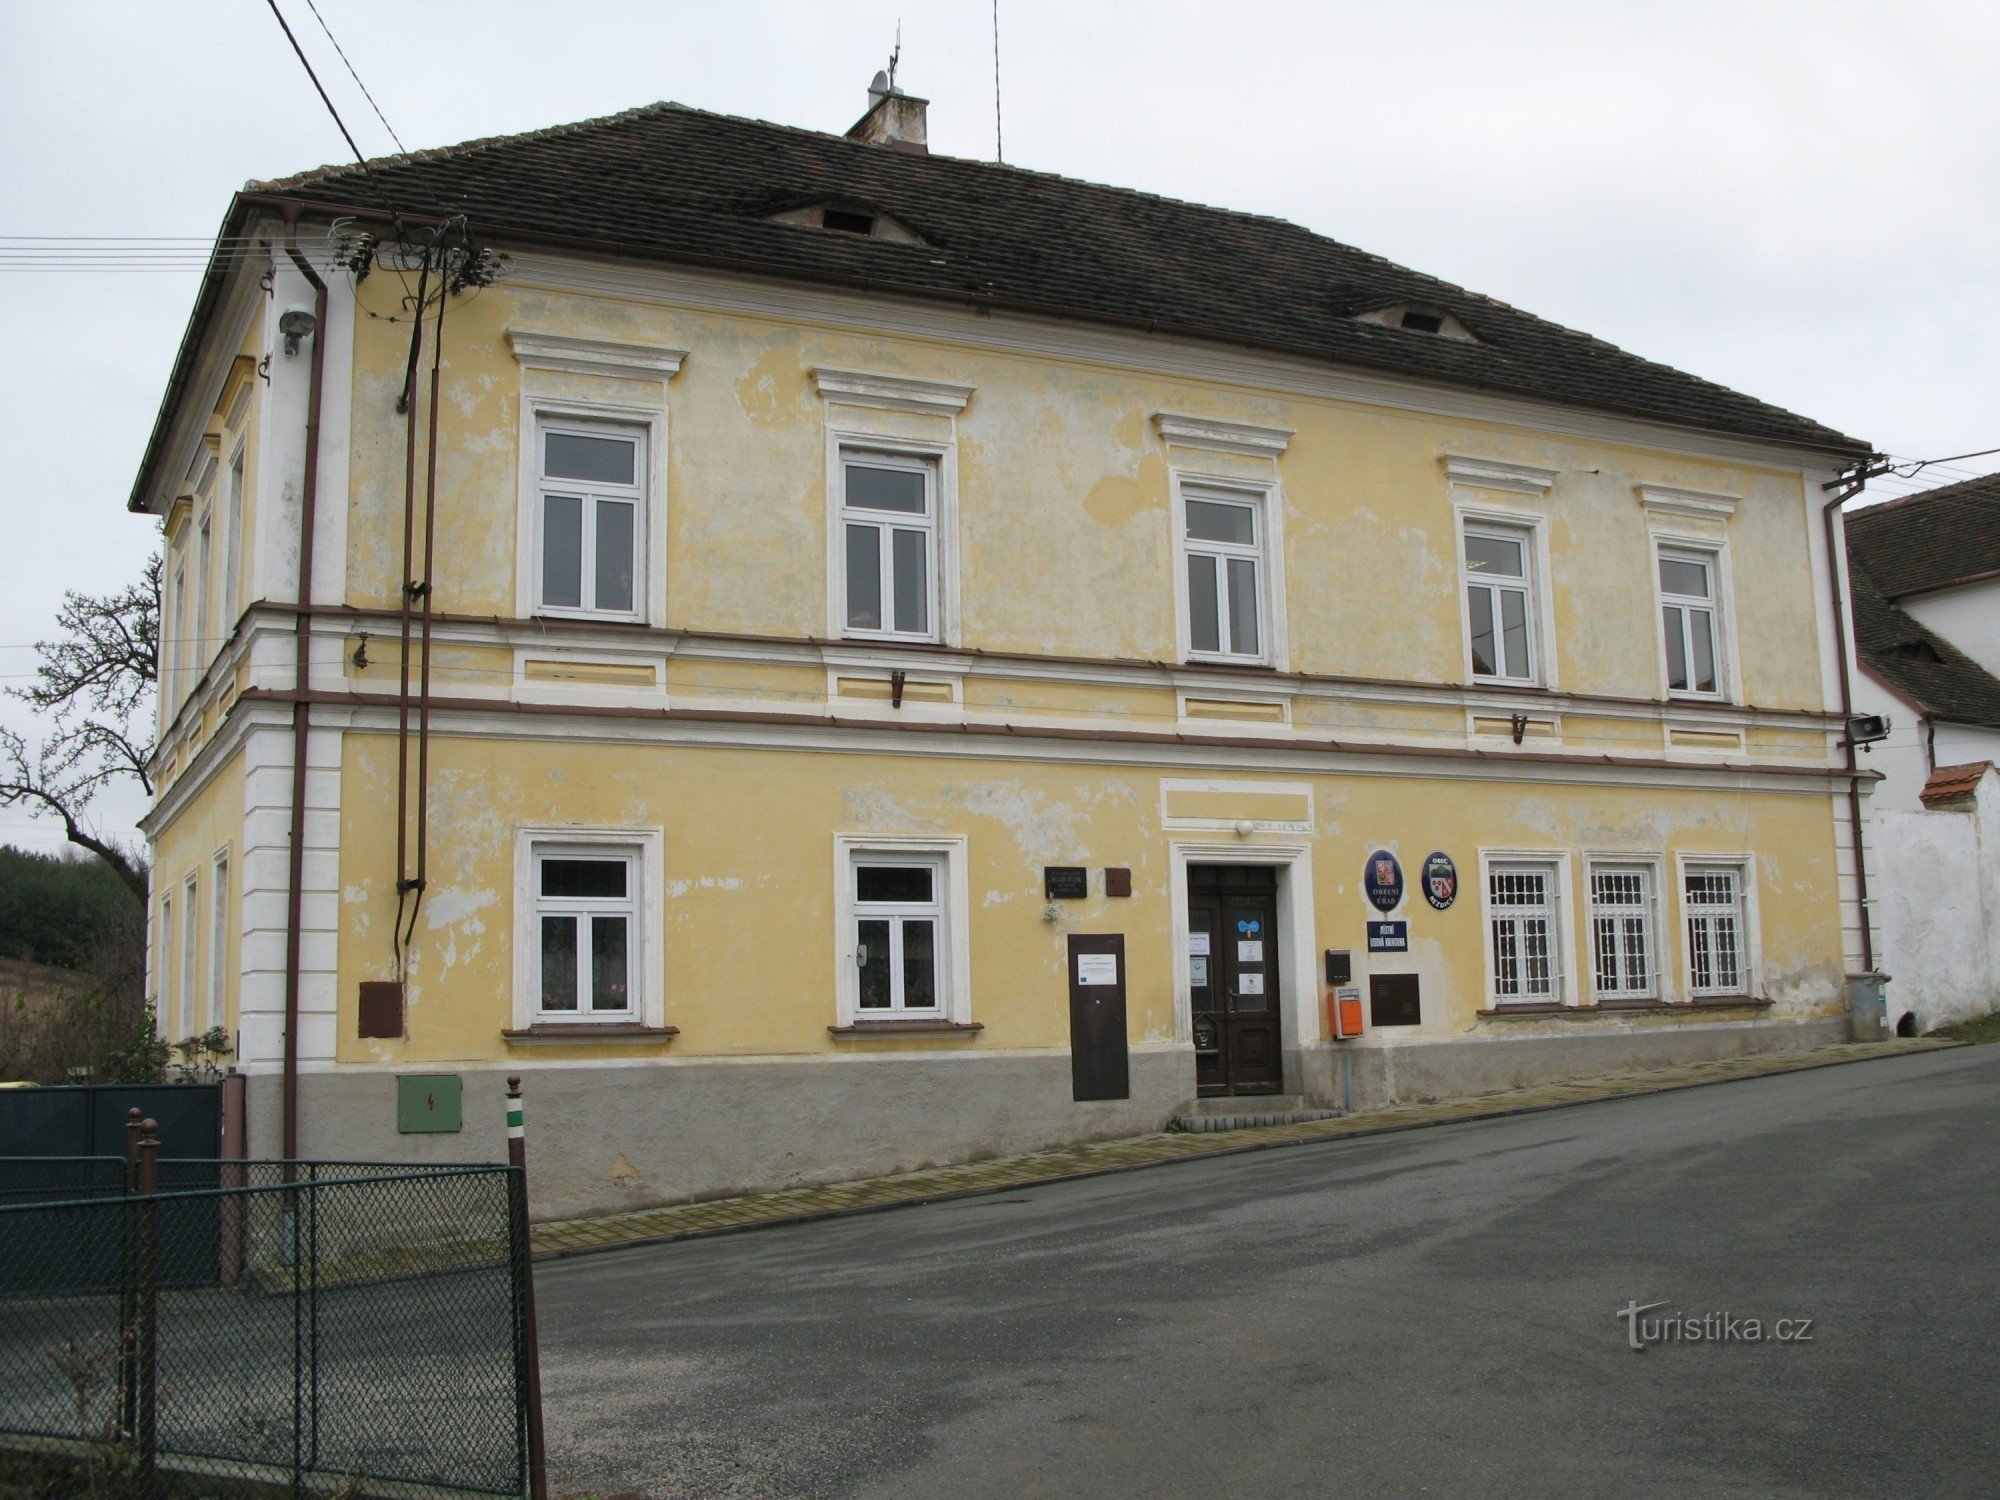 Nezdice - urząd miejski, dawna szkoła miejska z 1847 r